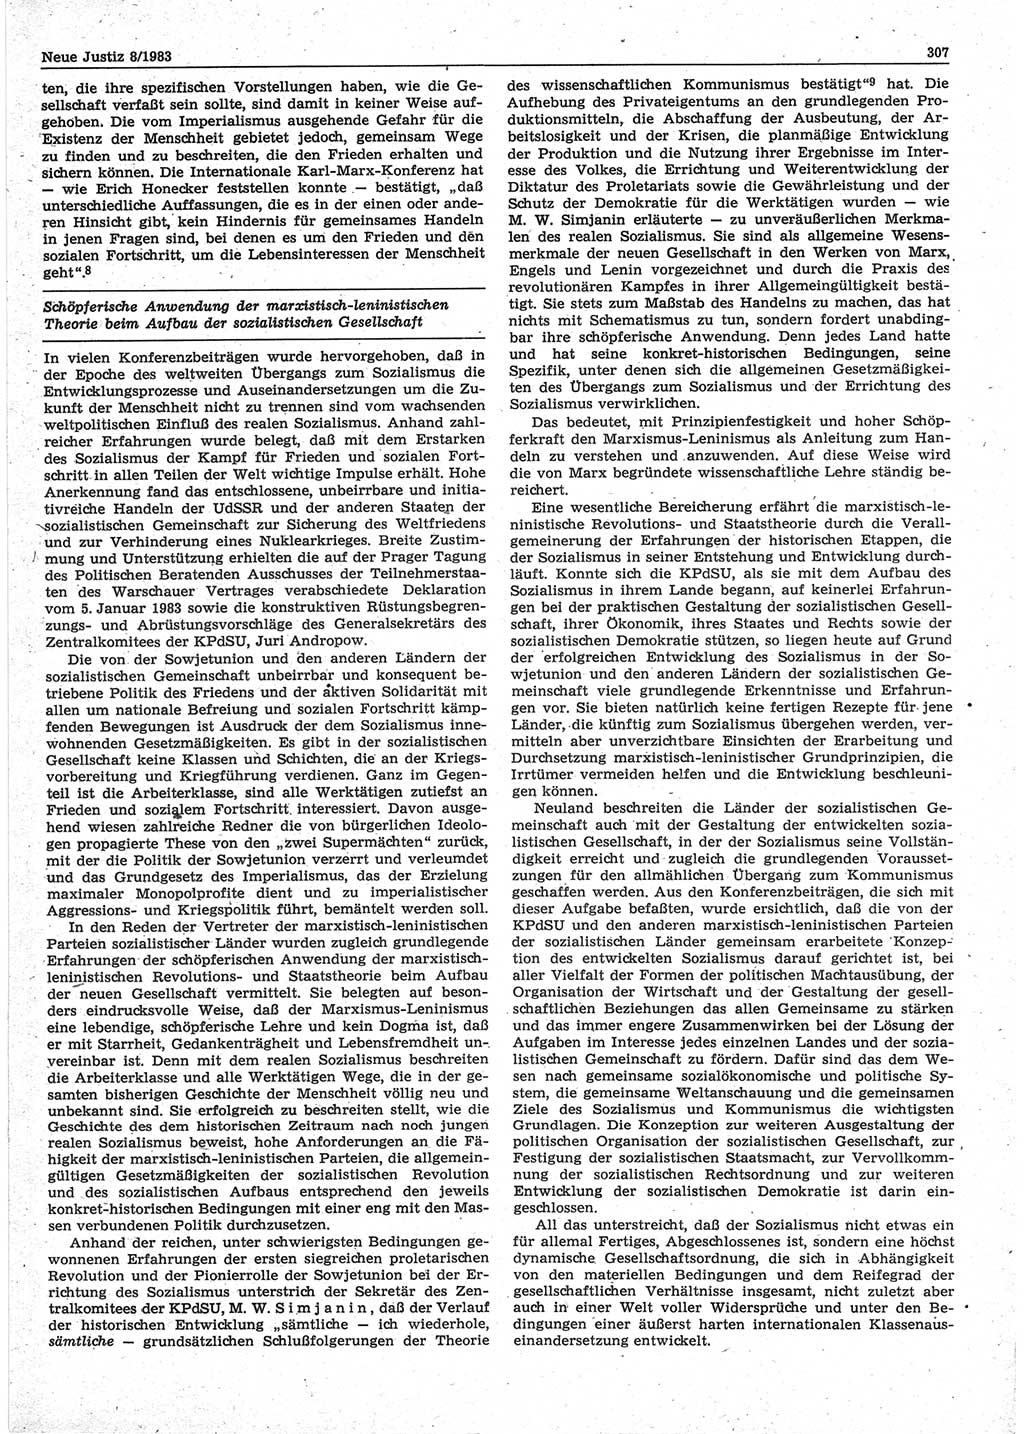 Neue Justiz (NJ), Zeitschrift für sozialistisches Recht und Gesetzlichkeit [Deutsche Demokratische Republik (DDR)], 37. Jahrgang 1983, Seite 307 (NJ DDR 1983, S. 307)